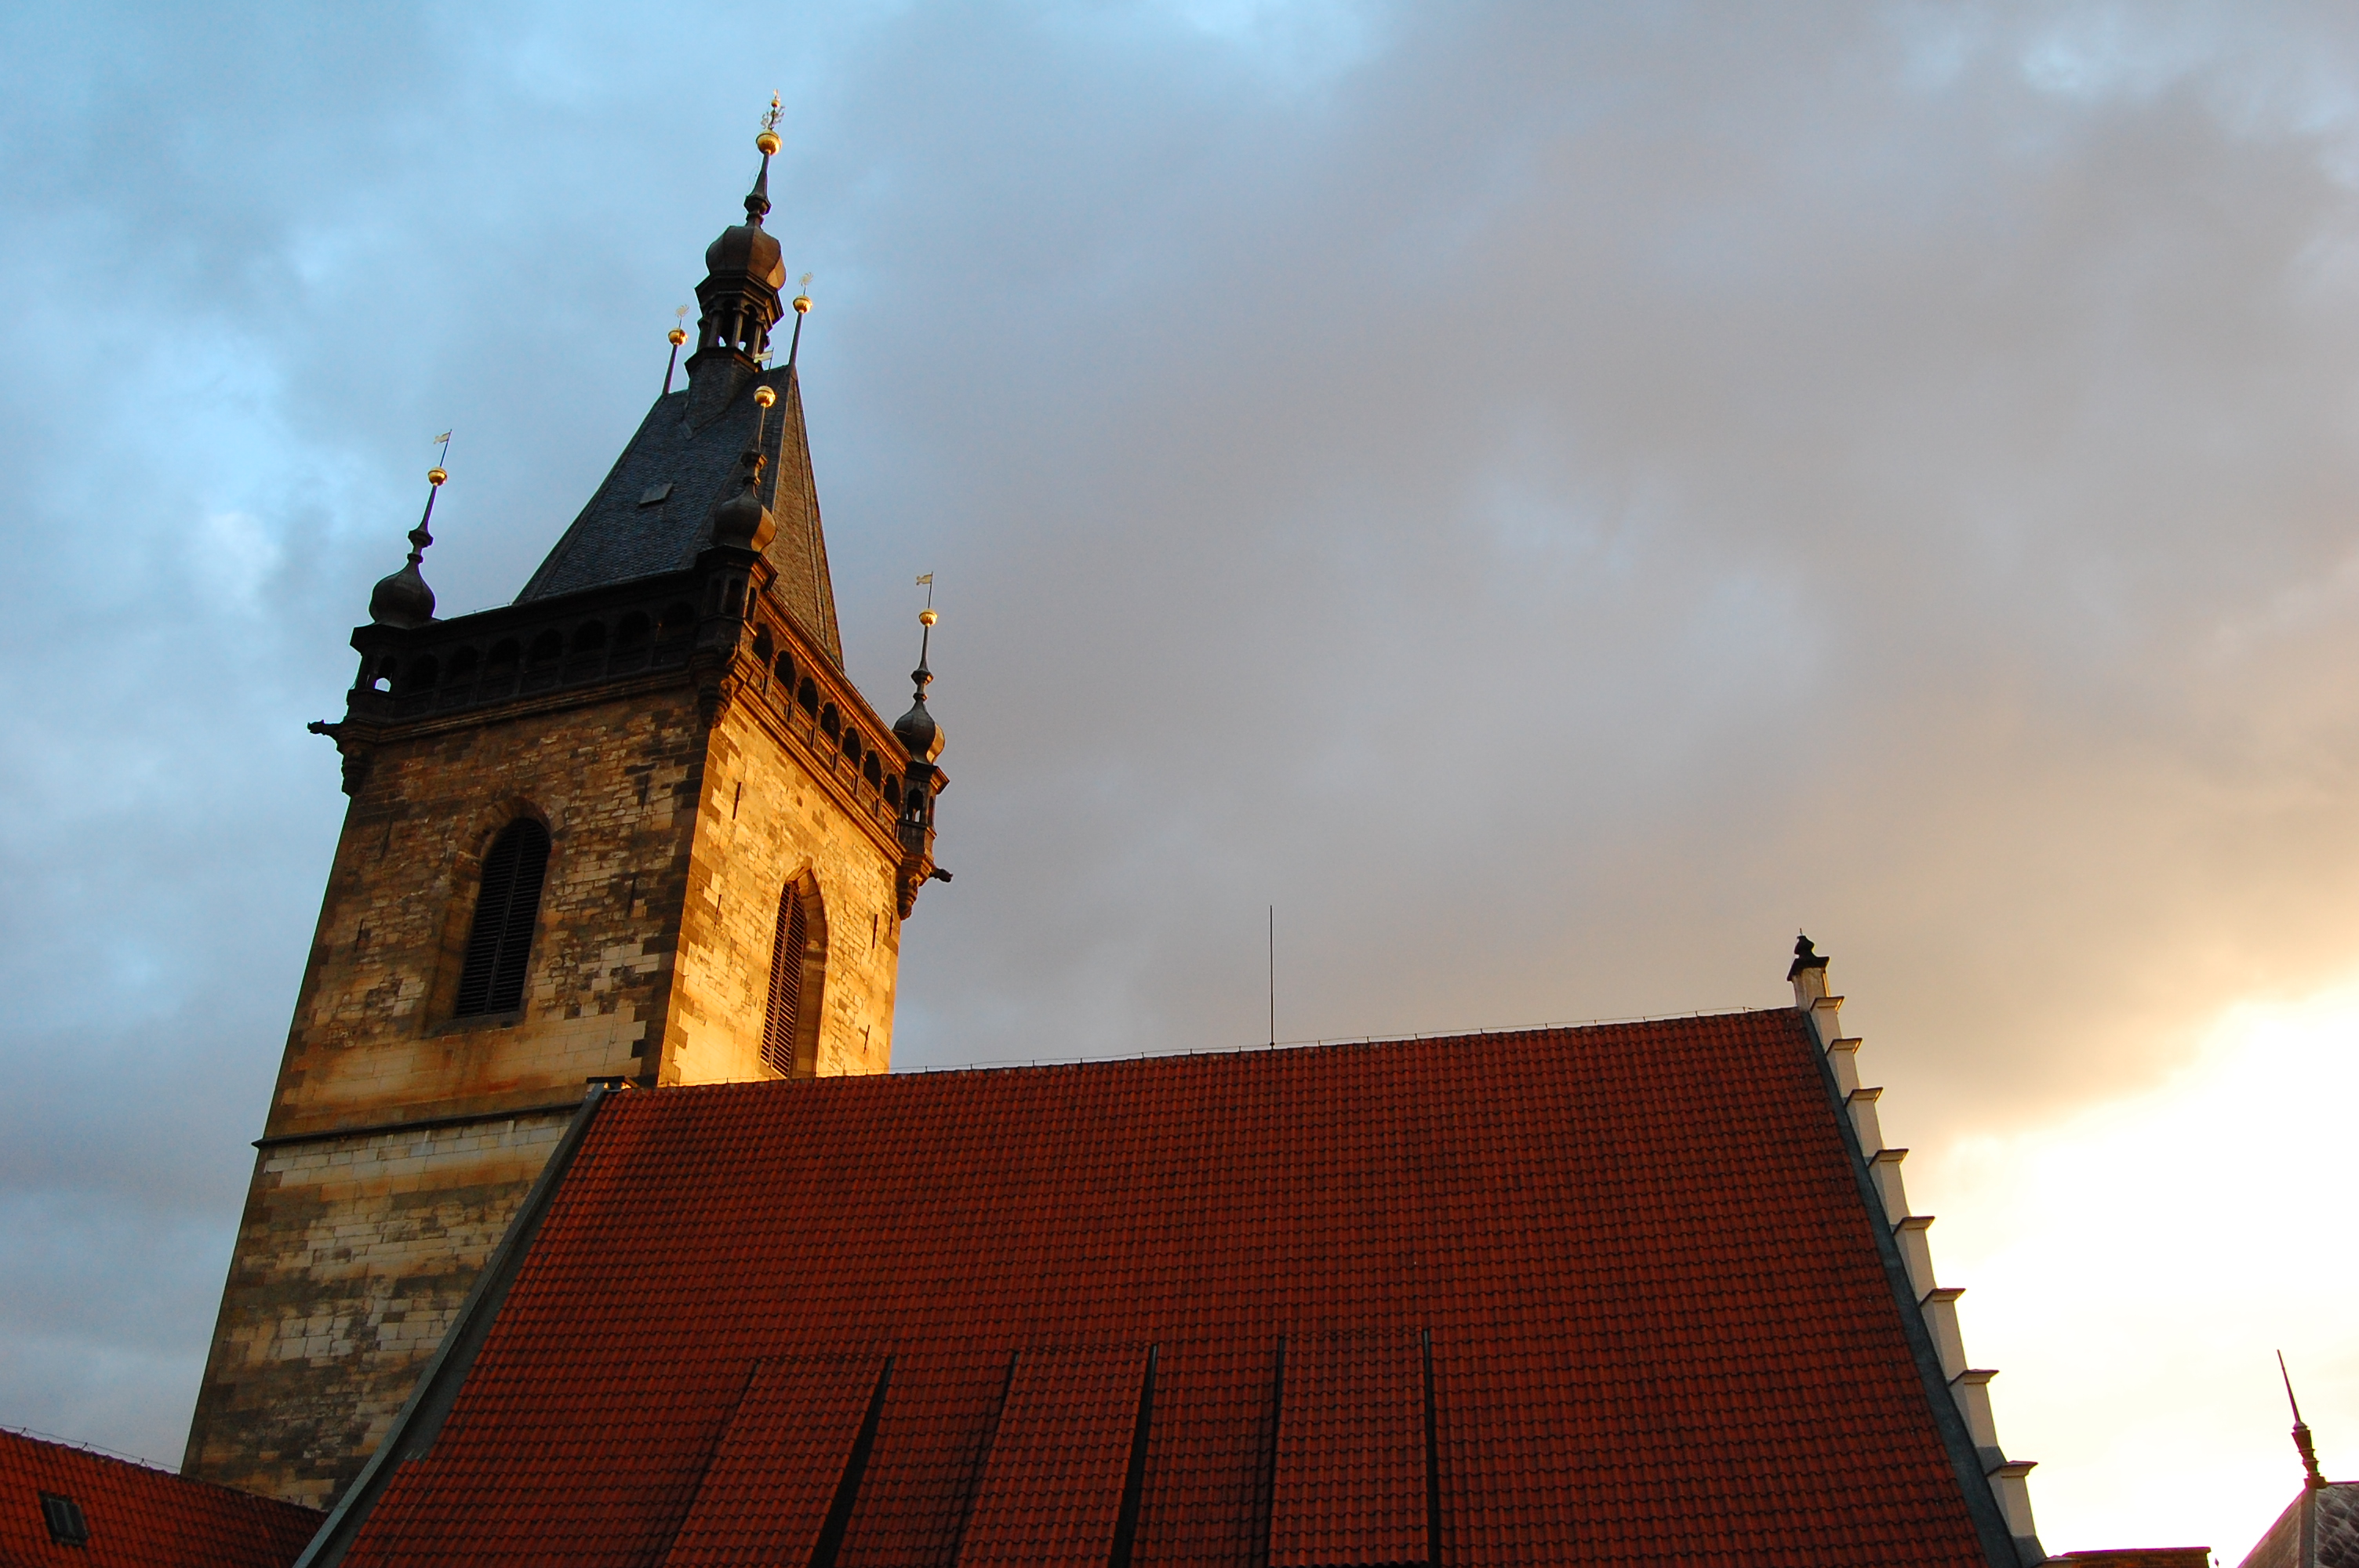 6. ročník Pražských věží odstartuje 29. března 2015 z nádvoří Novoměstské radnice.